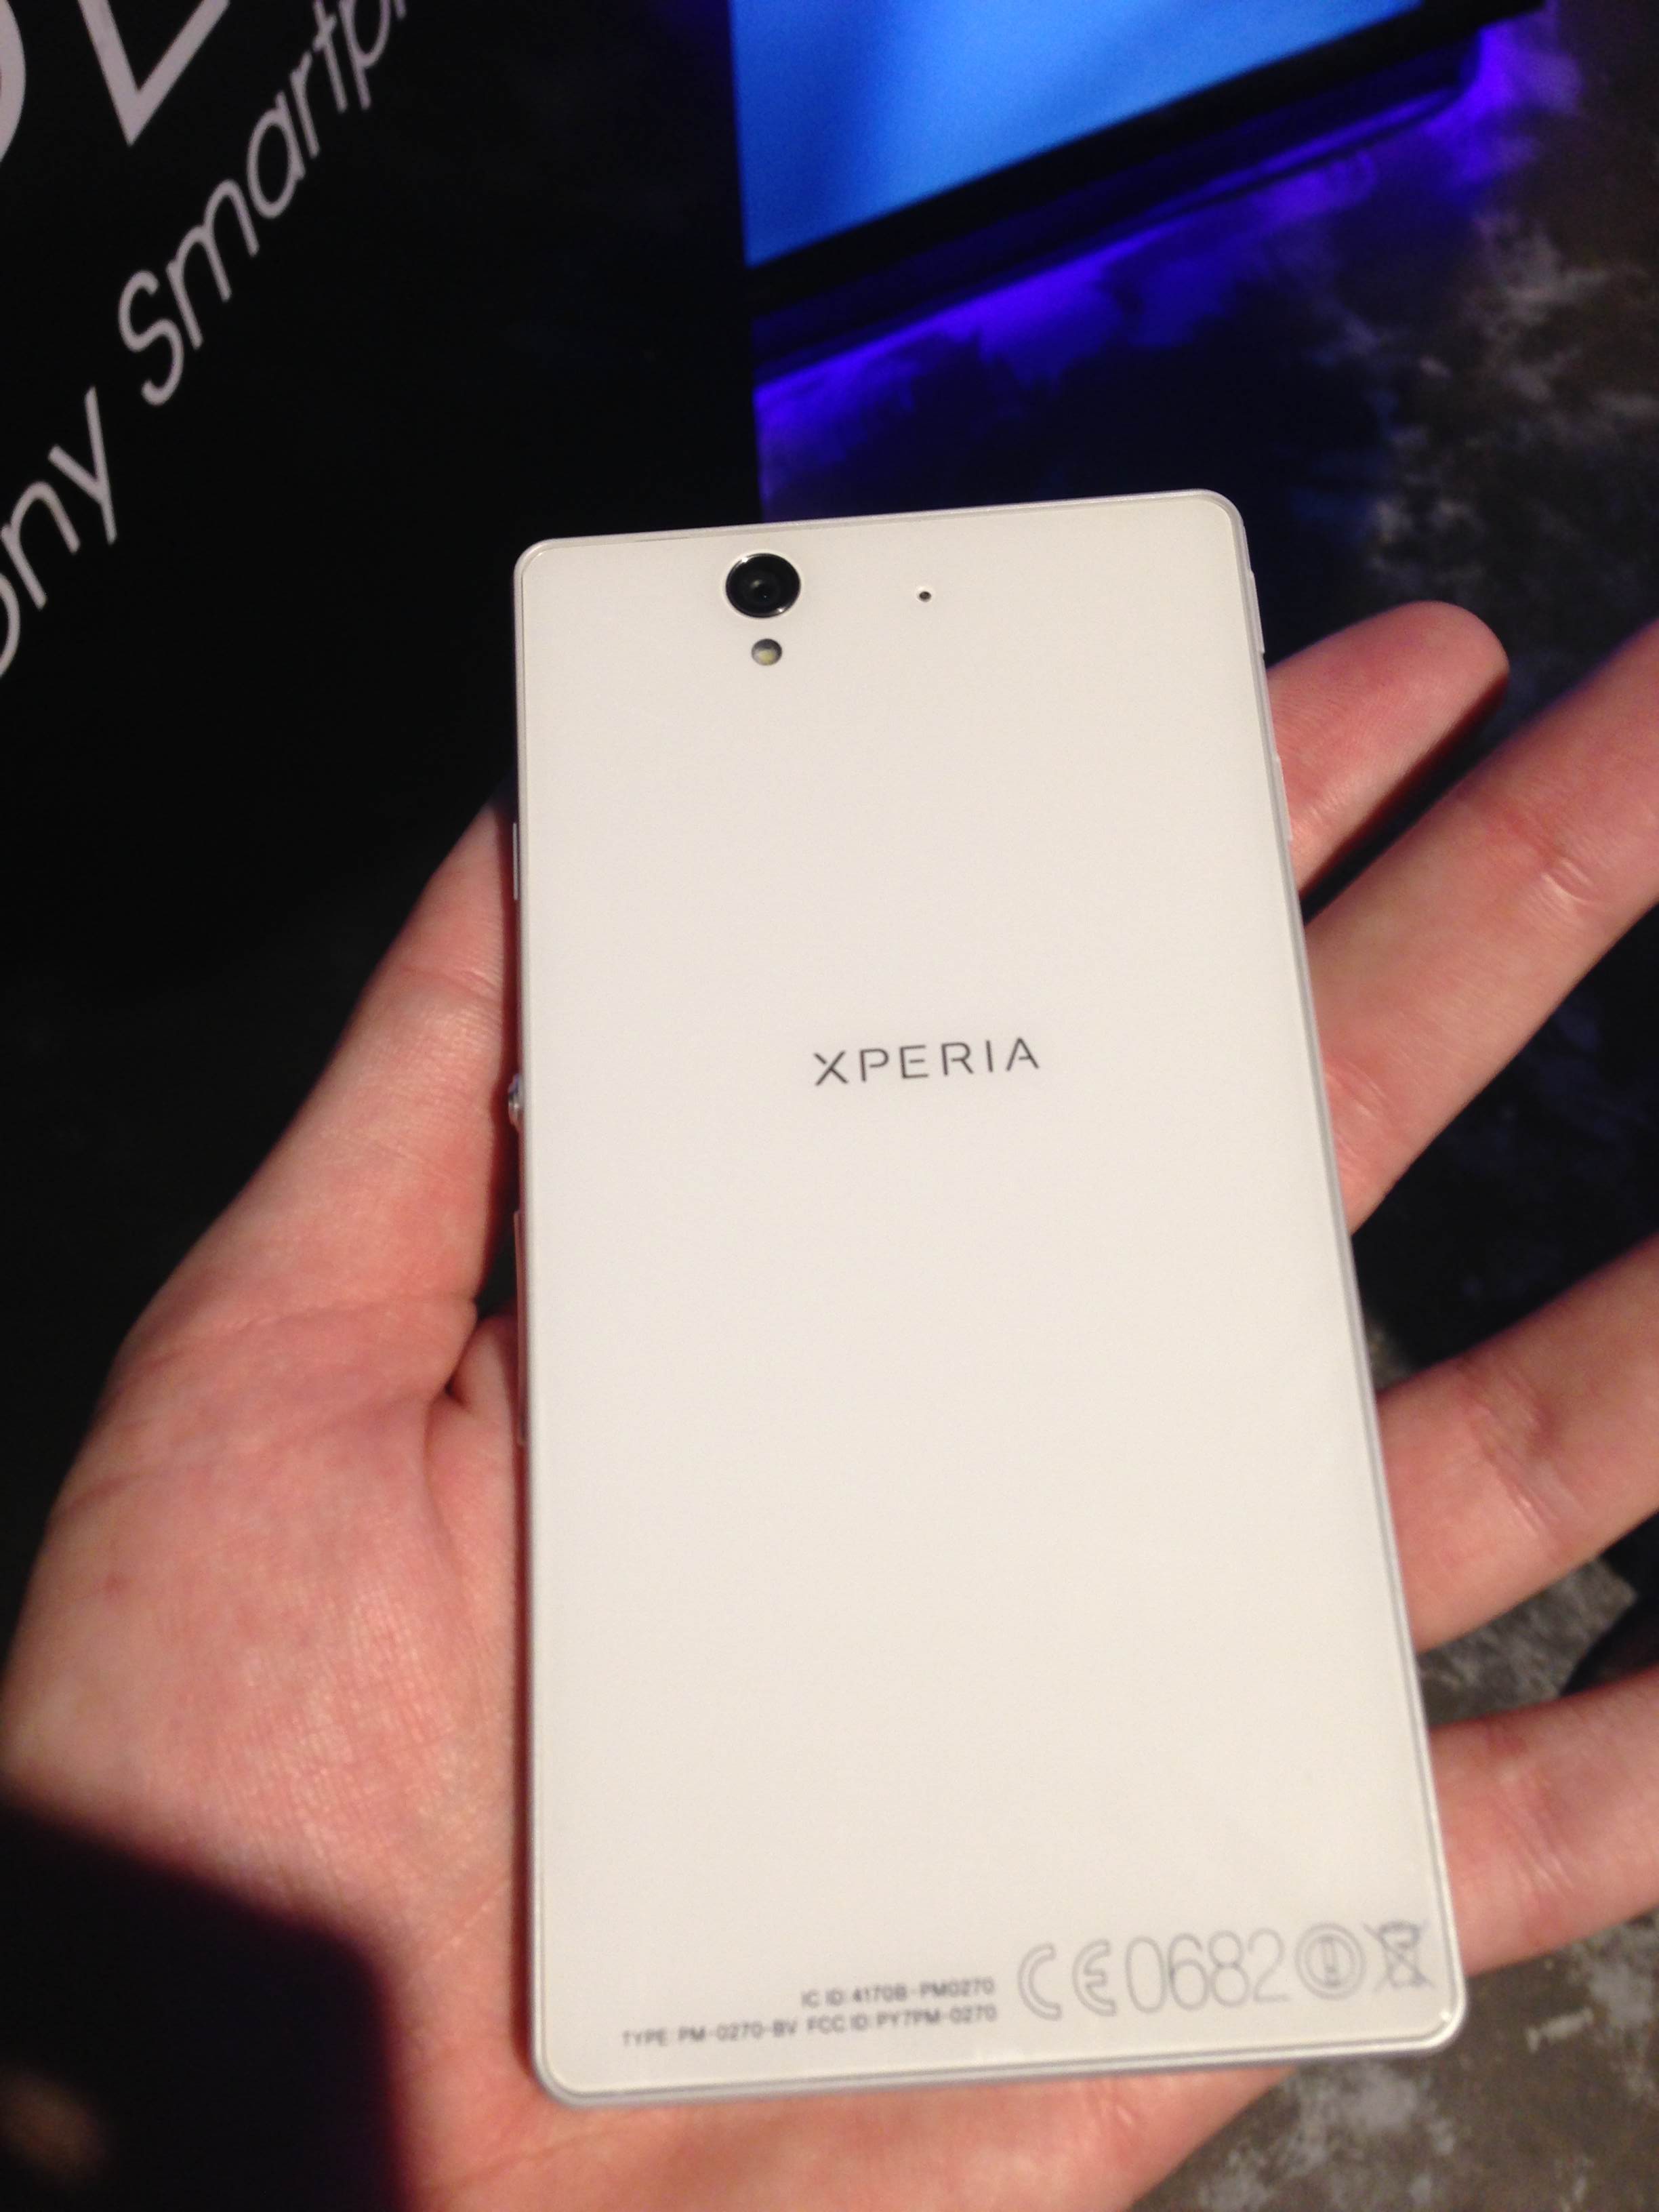 Le Sony Xperia disponible en pré-commande ! - Meilleur